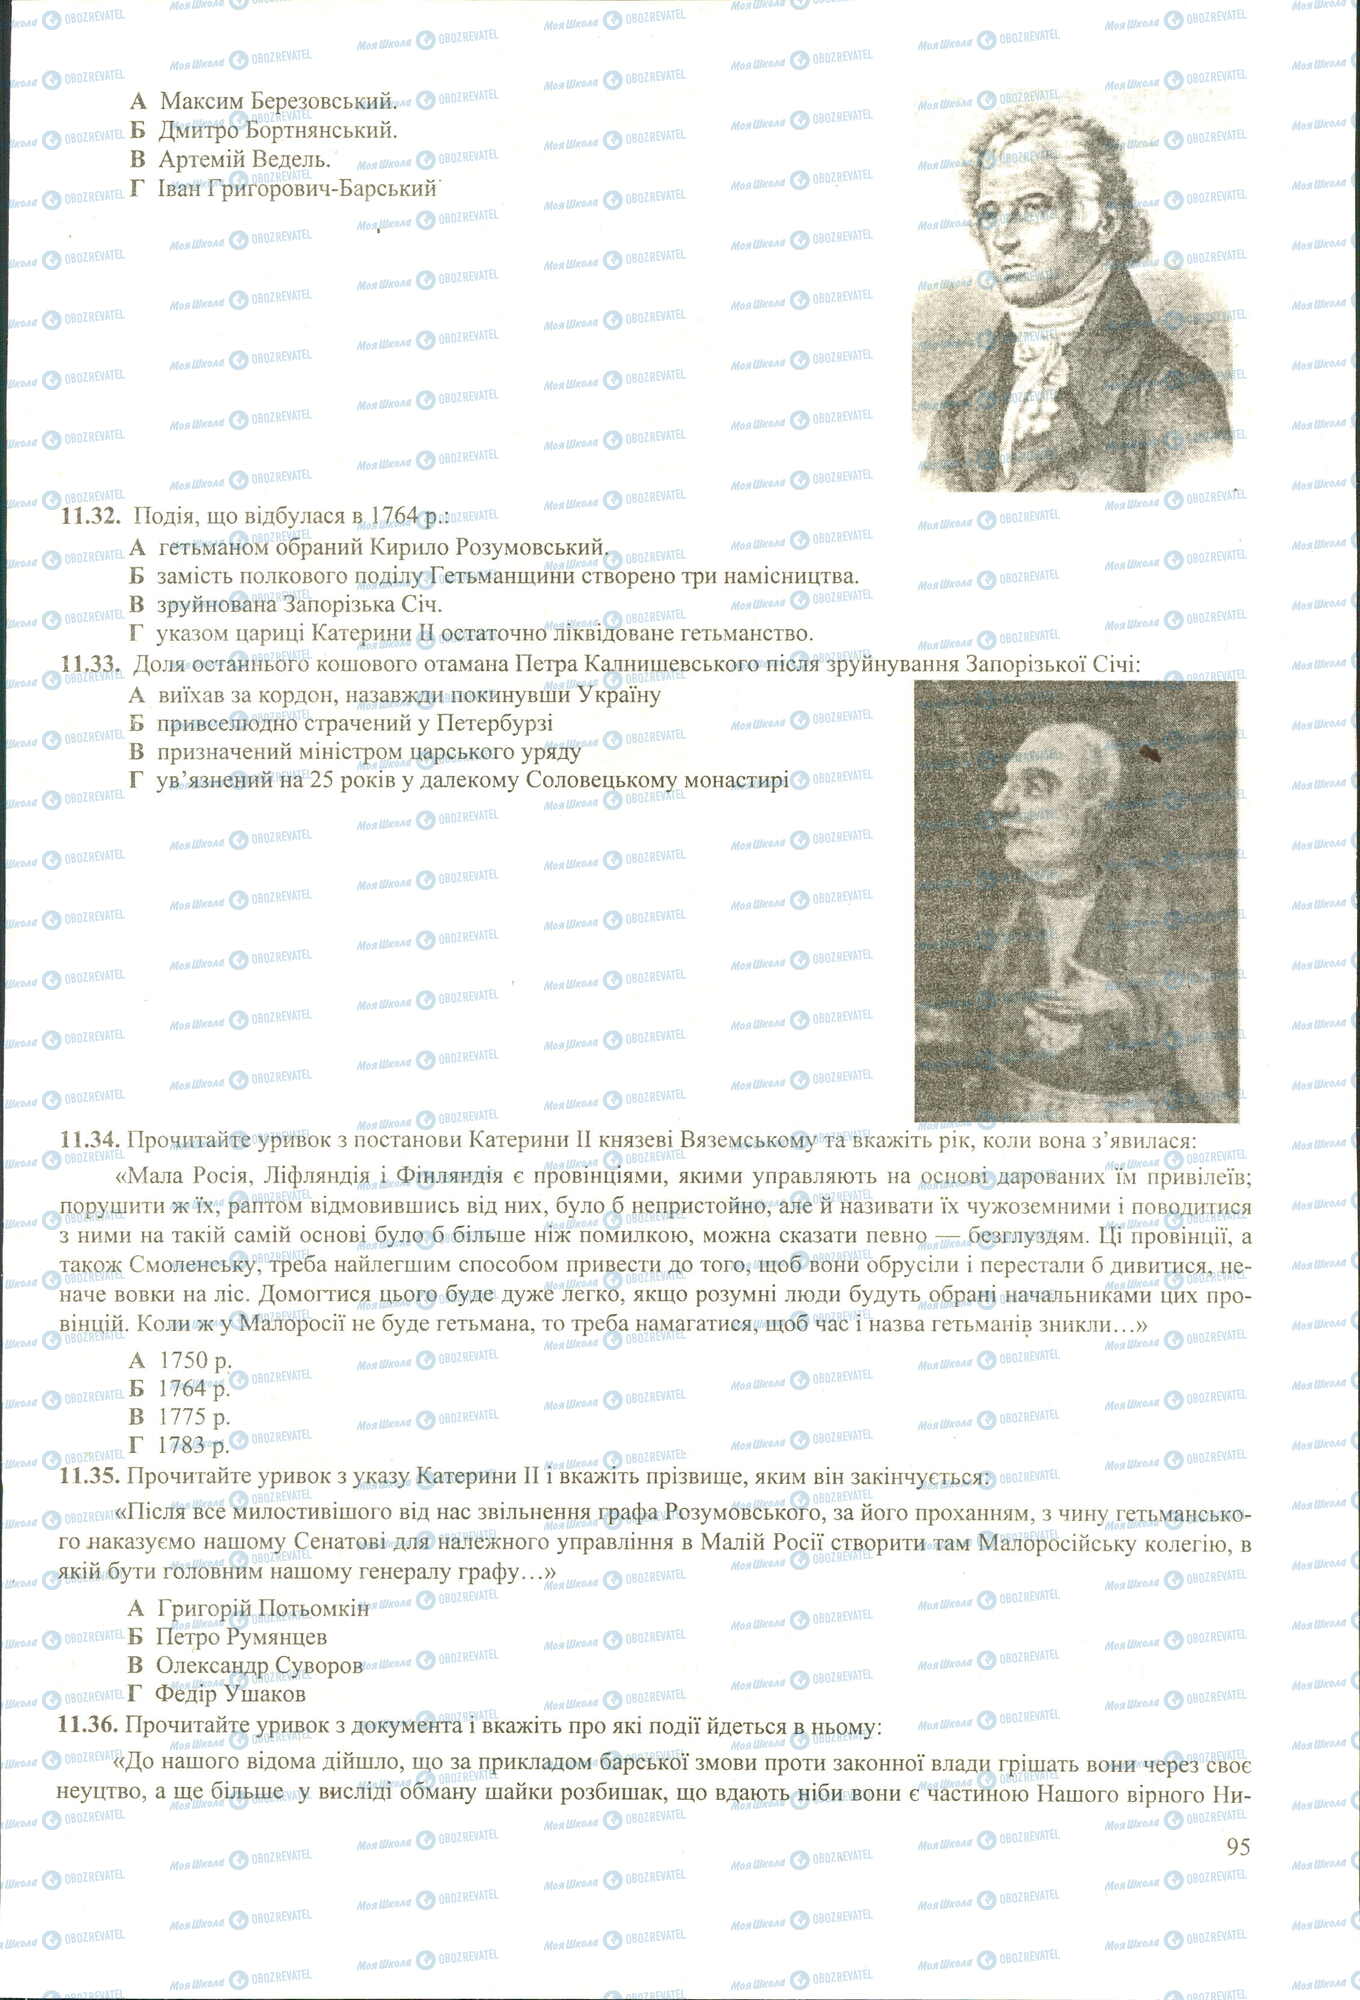 ЗНО История Украины 11 класс страница 32-36